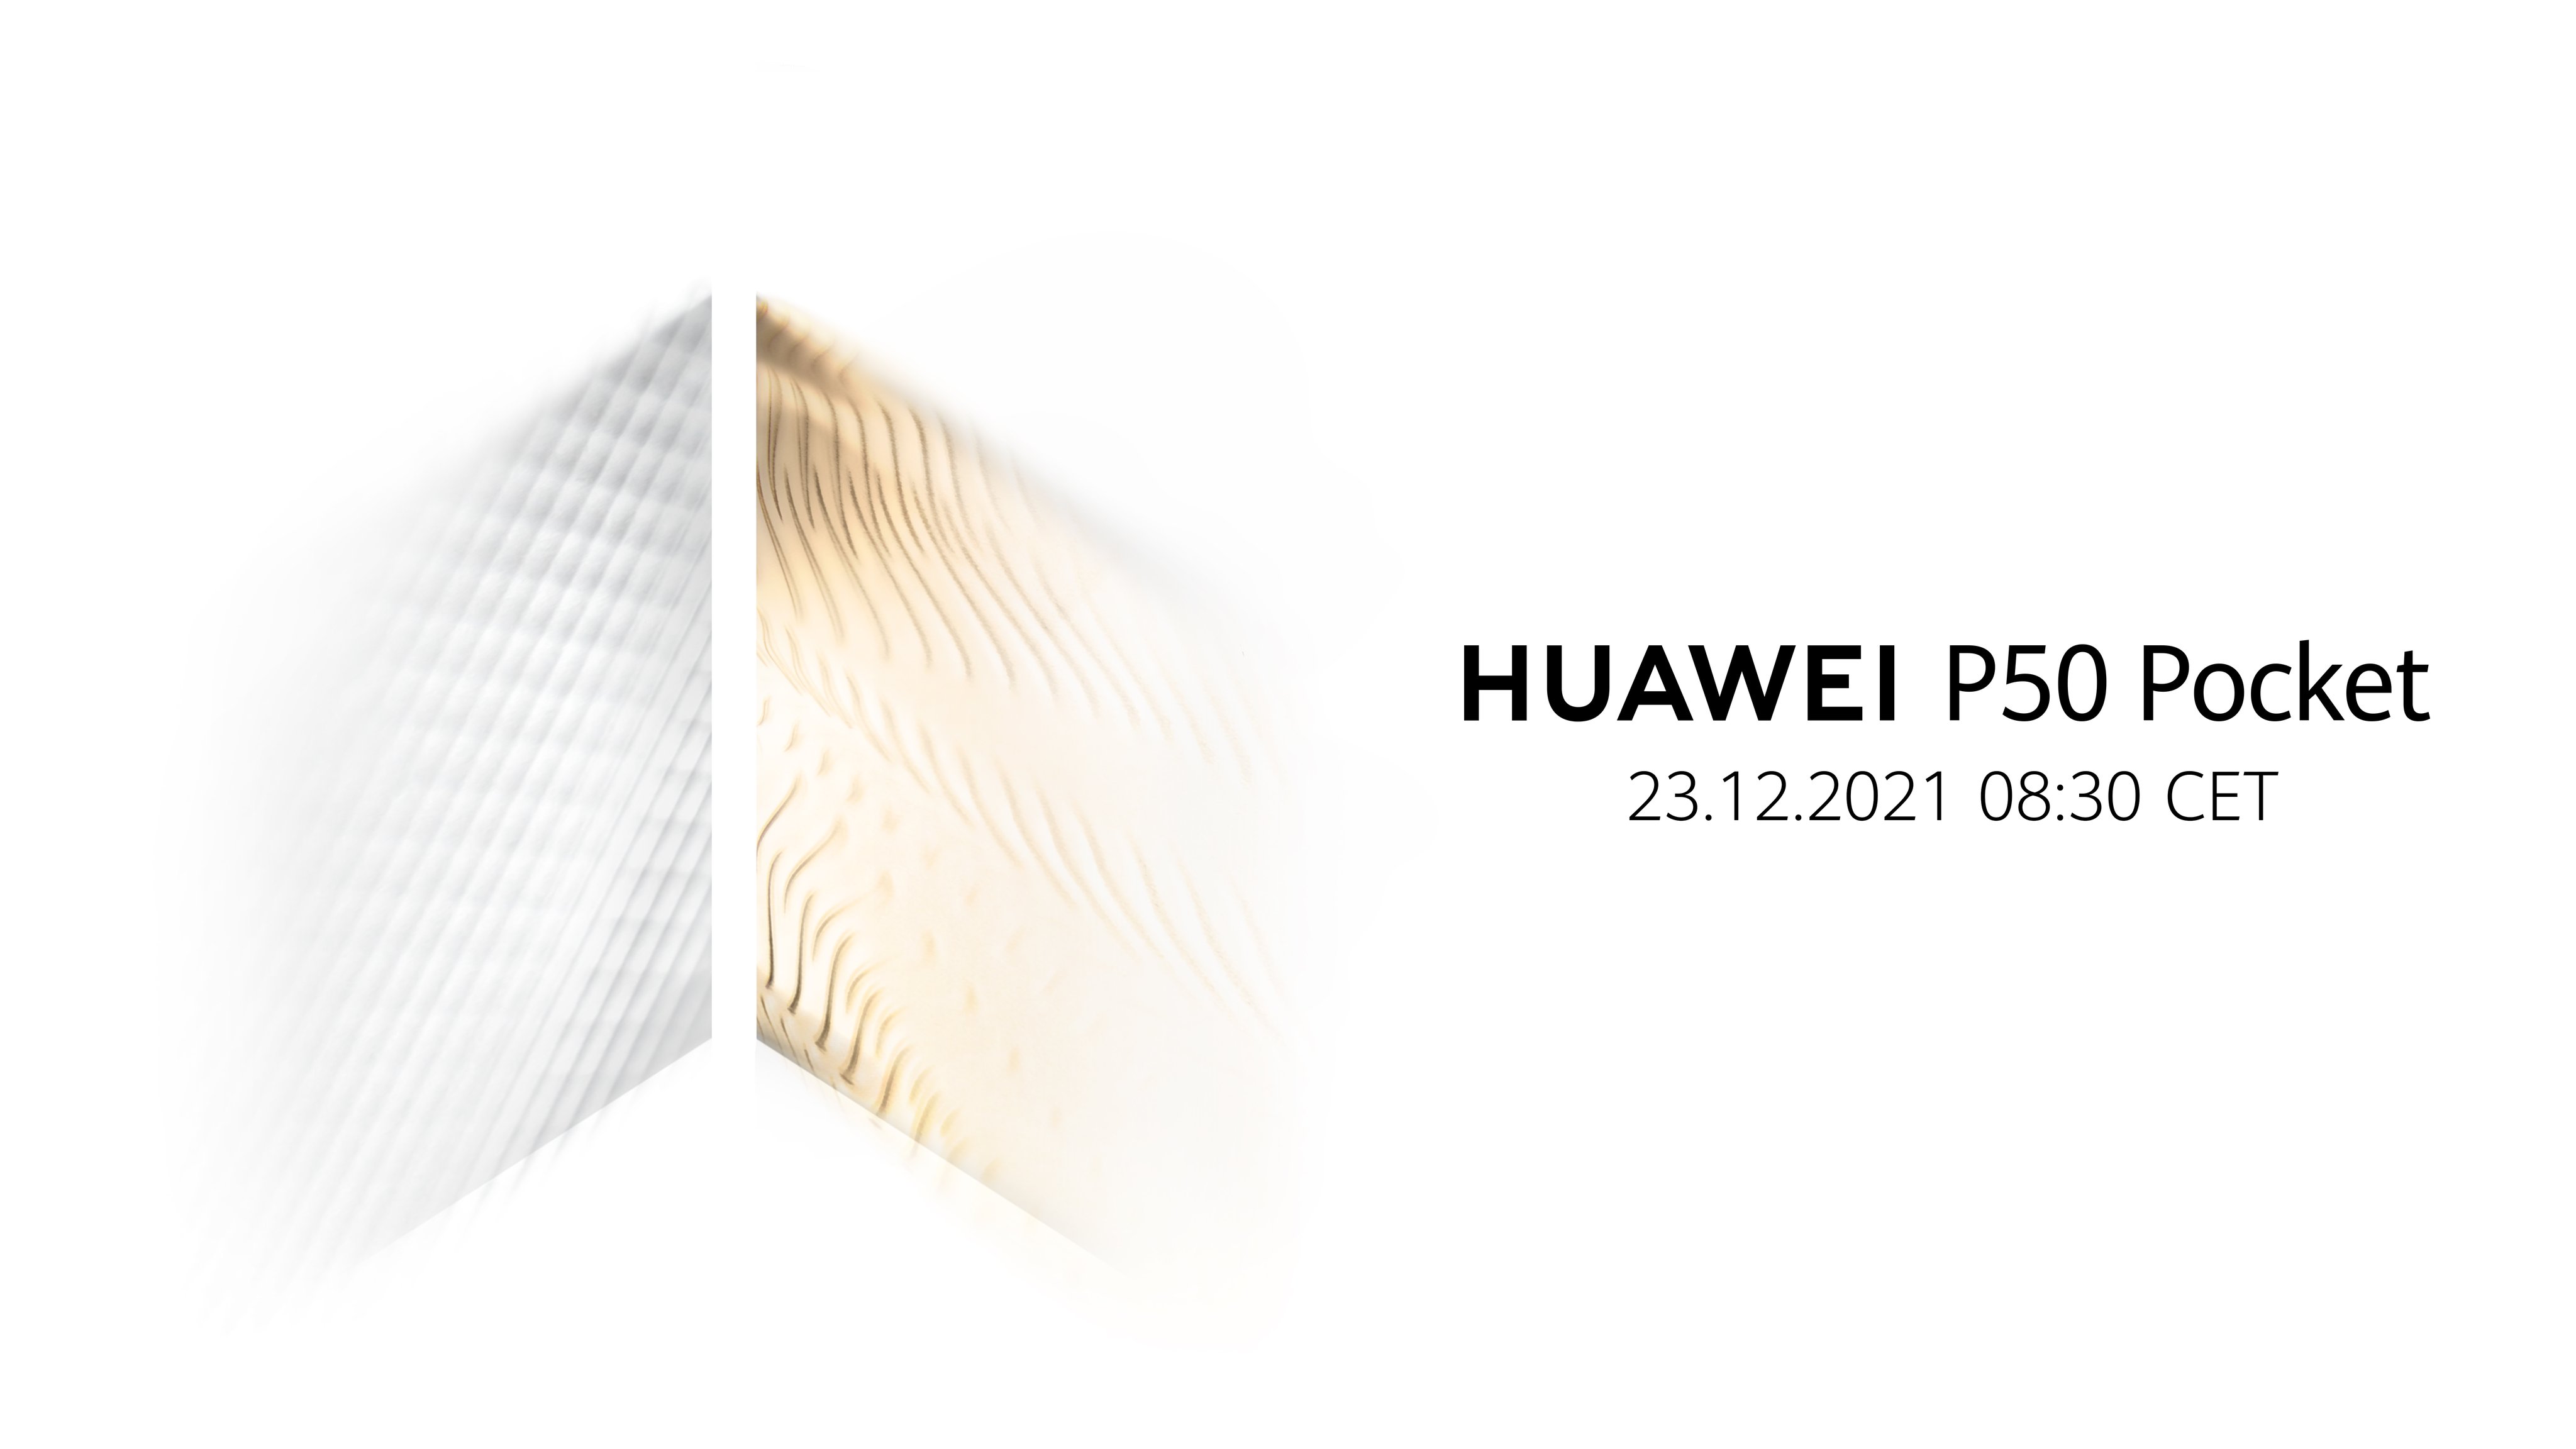 Oficjalnie: nowy składany smartfon Huawei będzie nosił nazwę P50 Pocket i zostanie zaprezentowany 23 grudnia